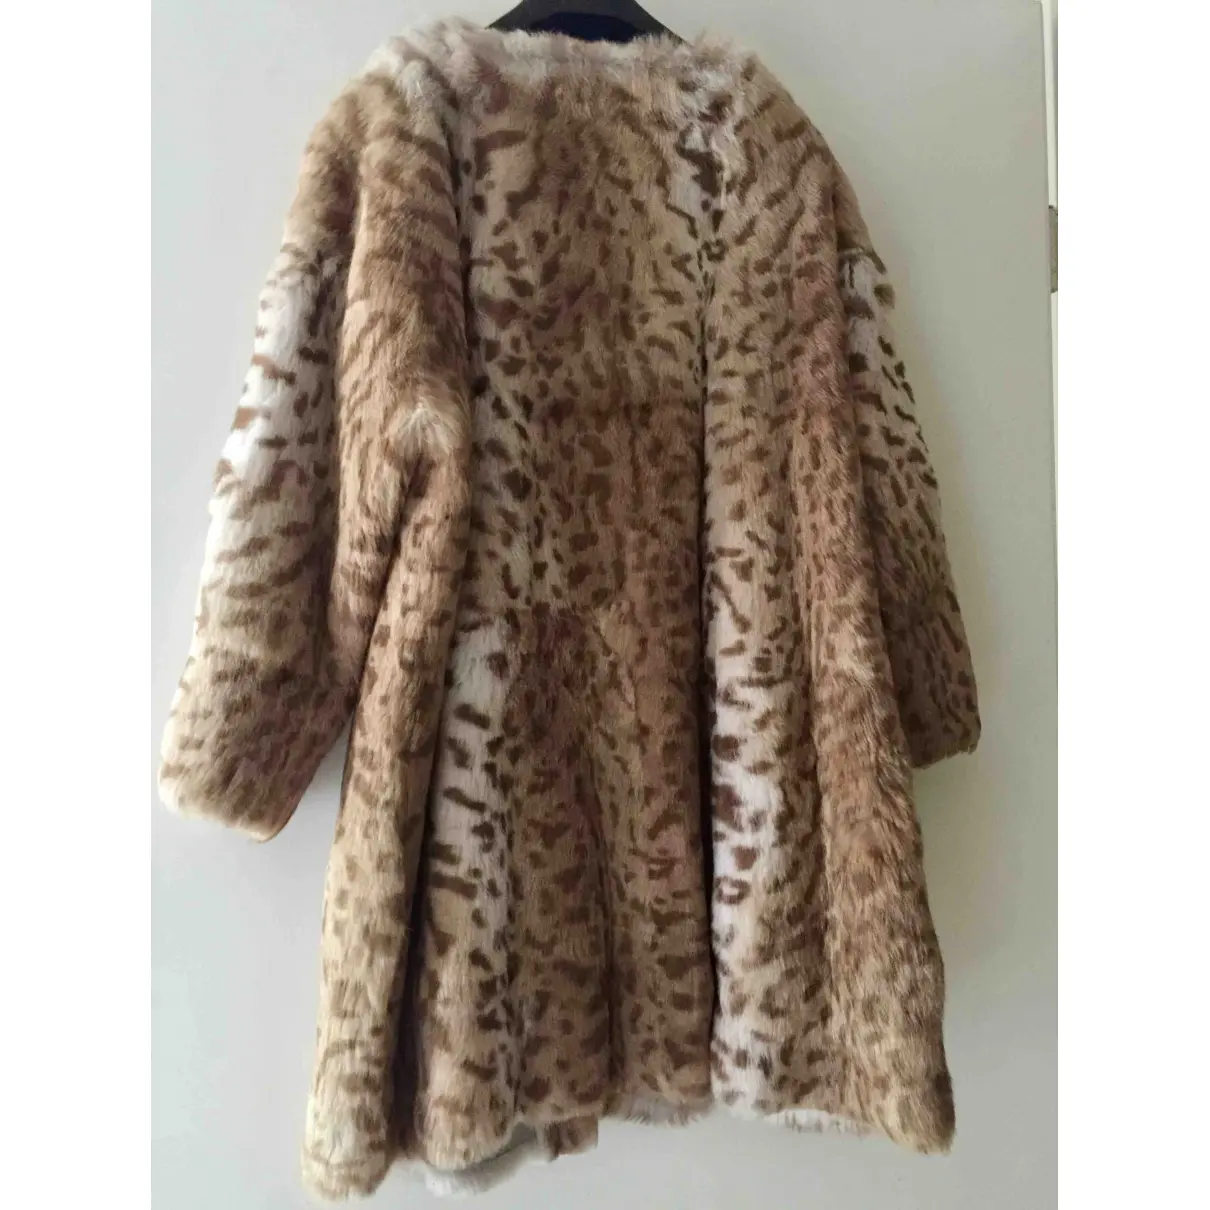 Utzon Rabbit coat for sale